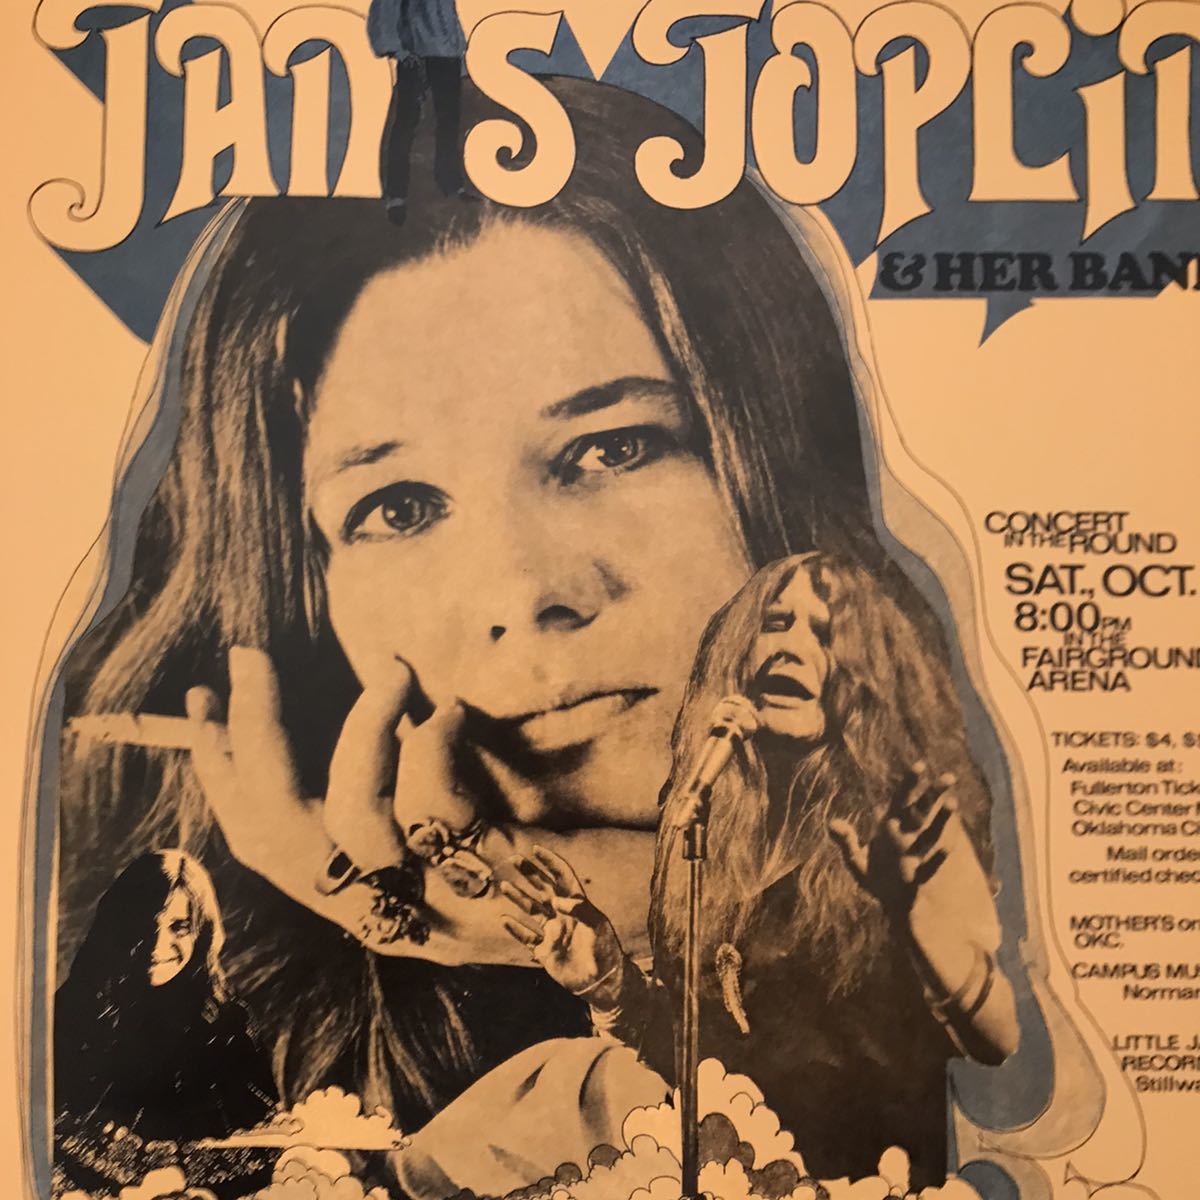  poster *1969ja varnish *jo pudding okro ho ma concert *Janis Joplin/James Cotton Blues Band/kozmik* blues 